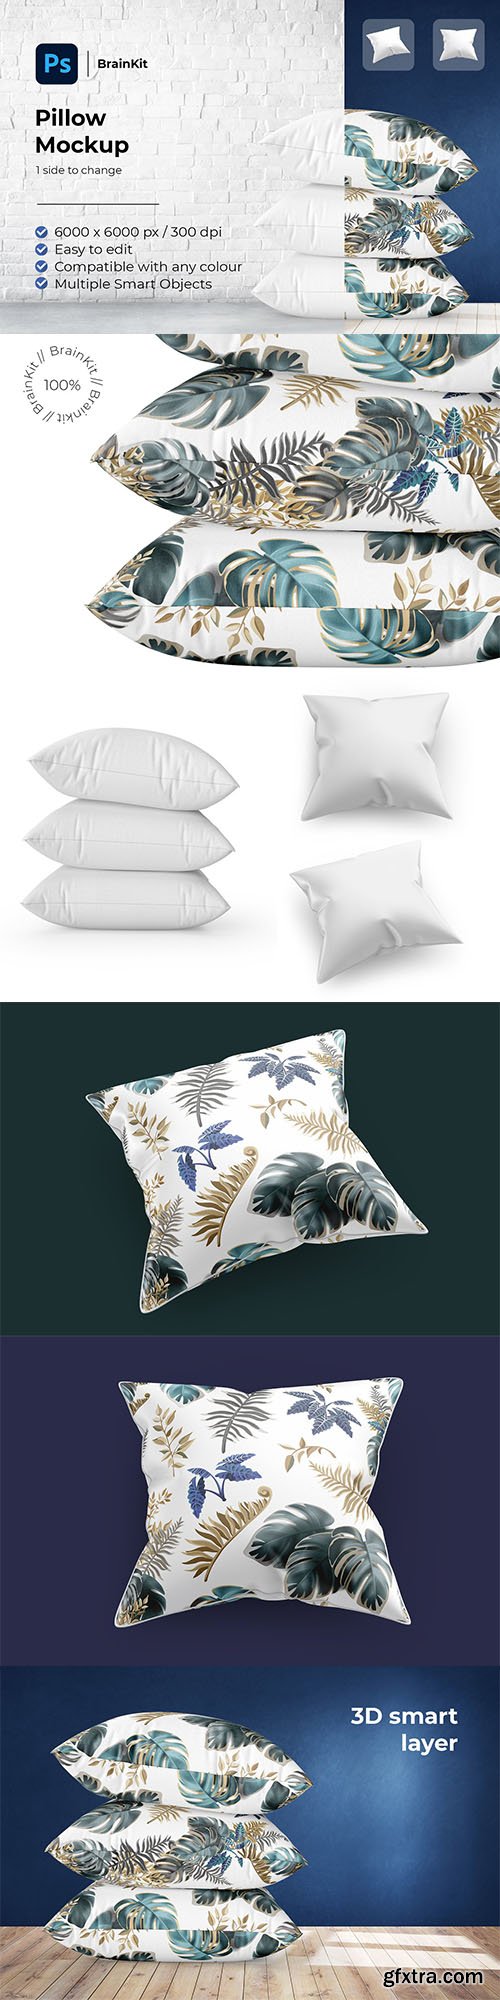 CreativeMarket - Pillows Mockup 6426596